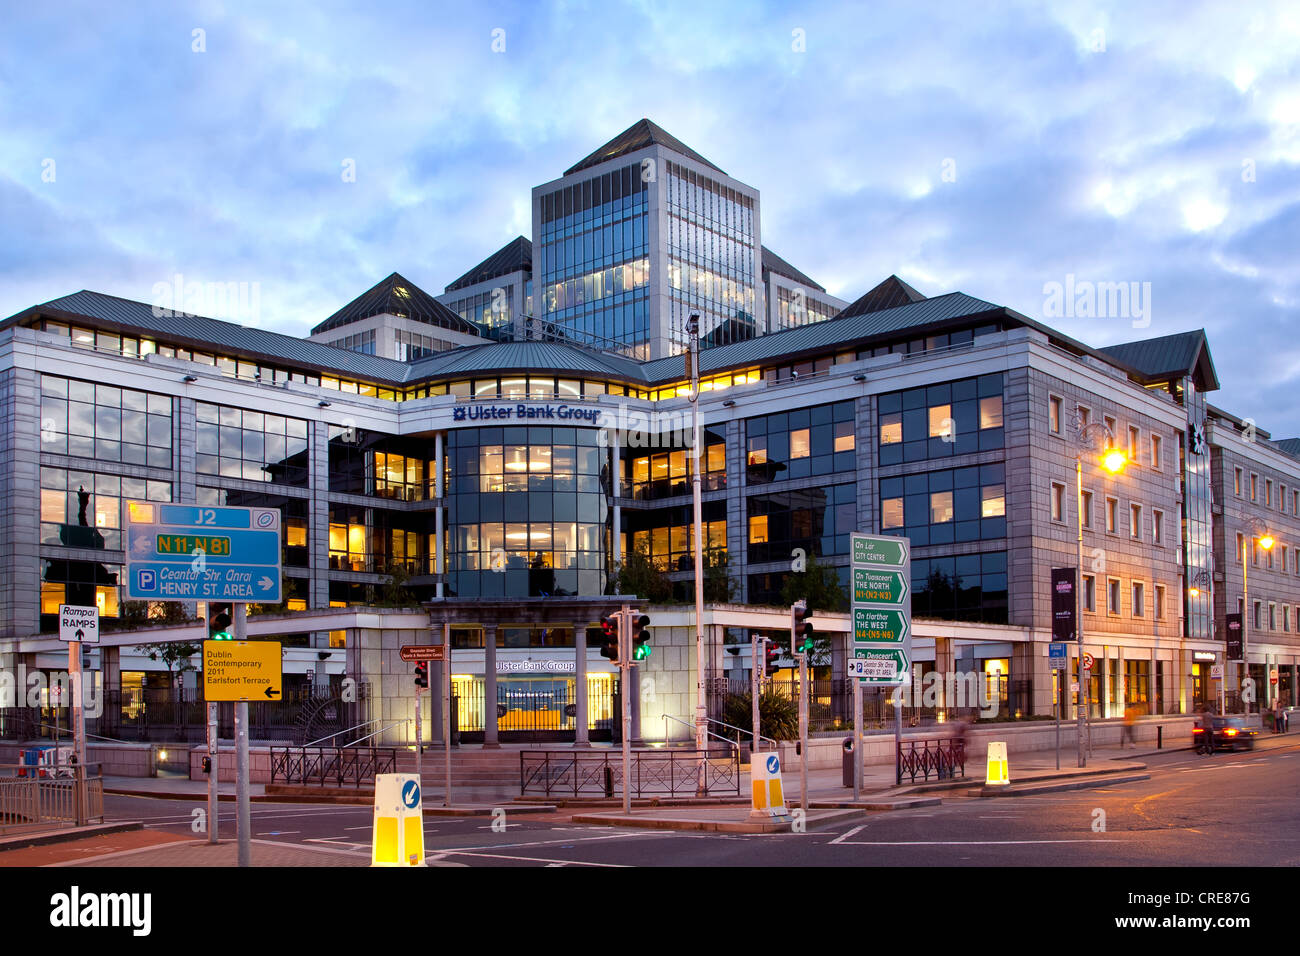 Siège de l'Ulster Bank Group dans le quartier financier de Dublin, Irlande, Europe Banque D'Images